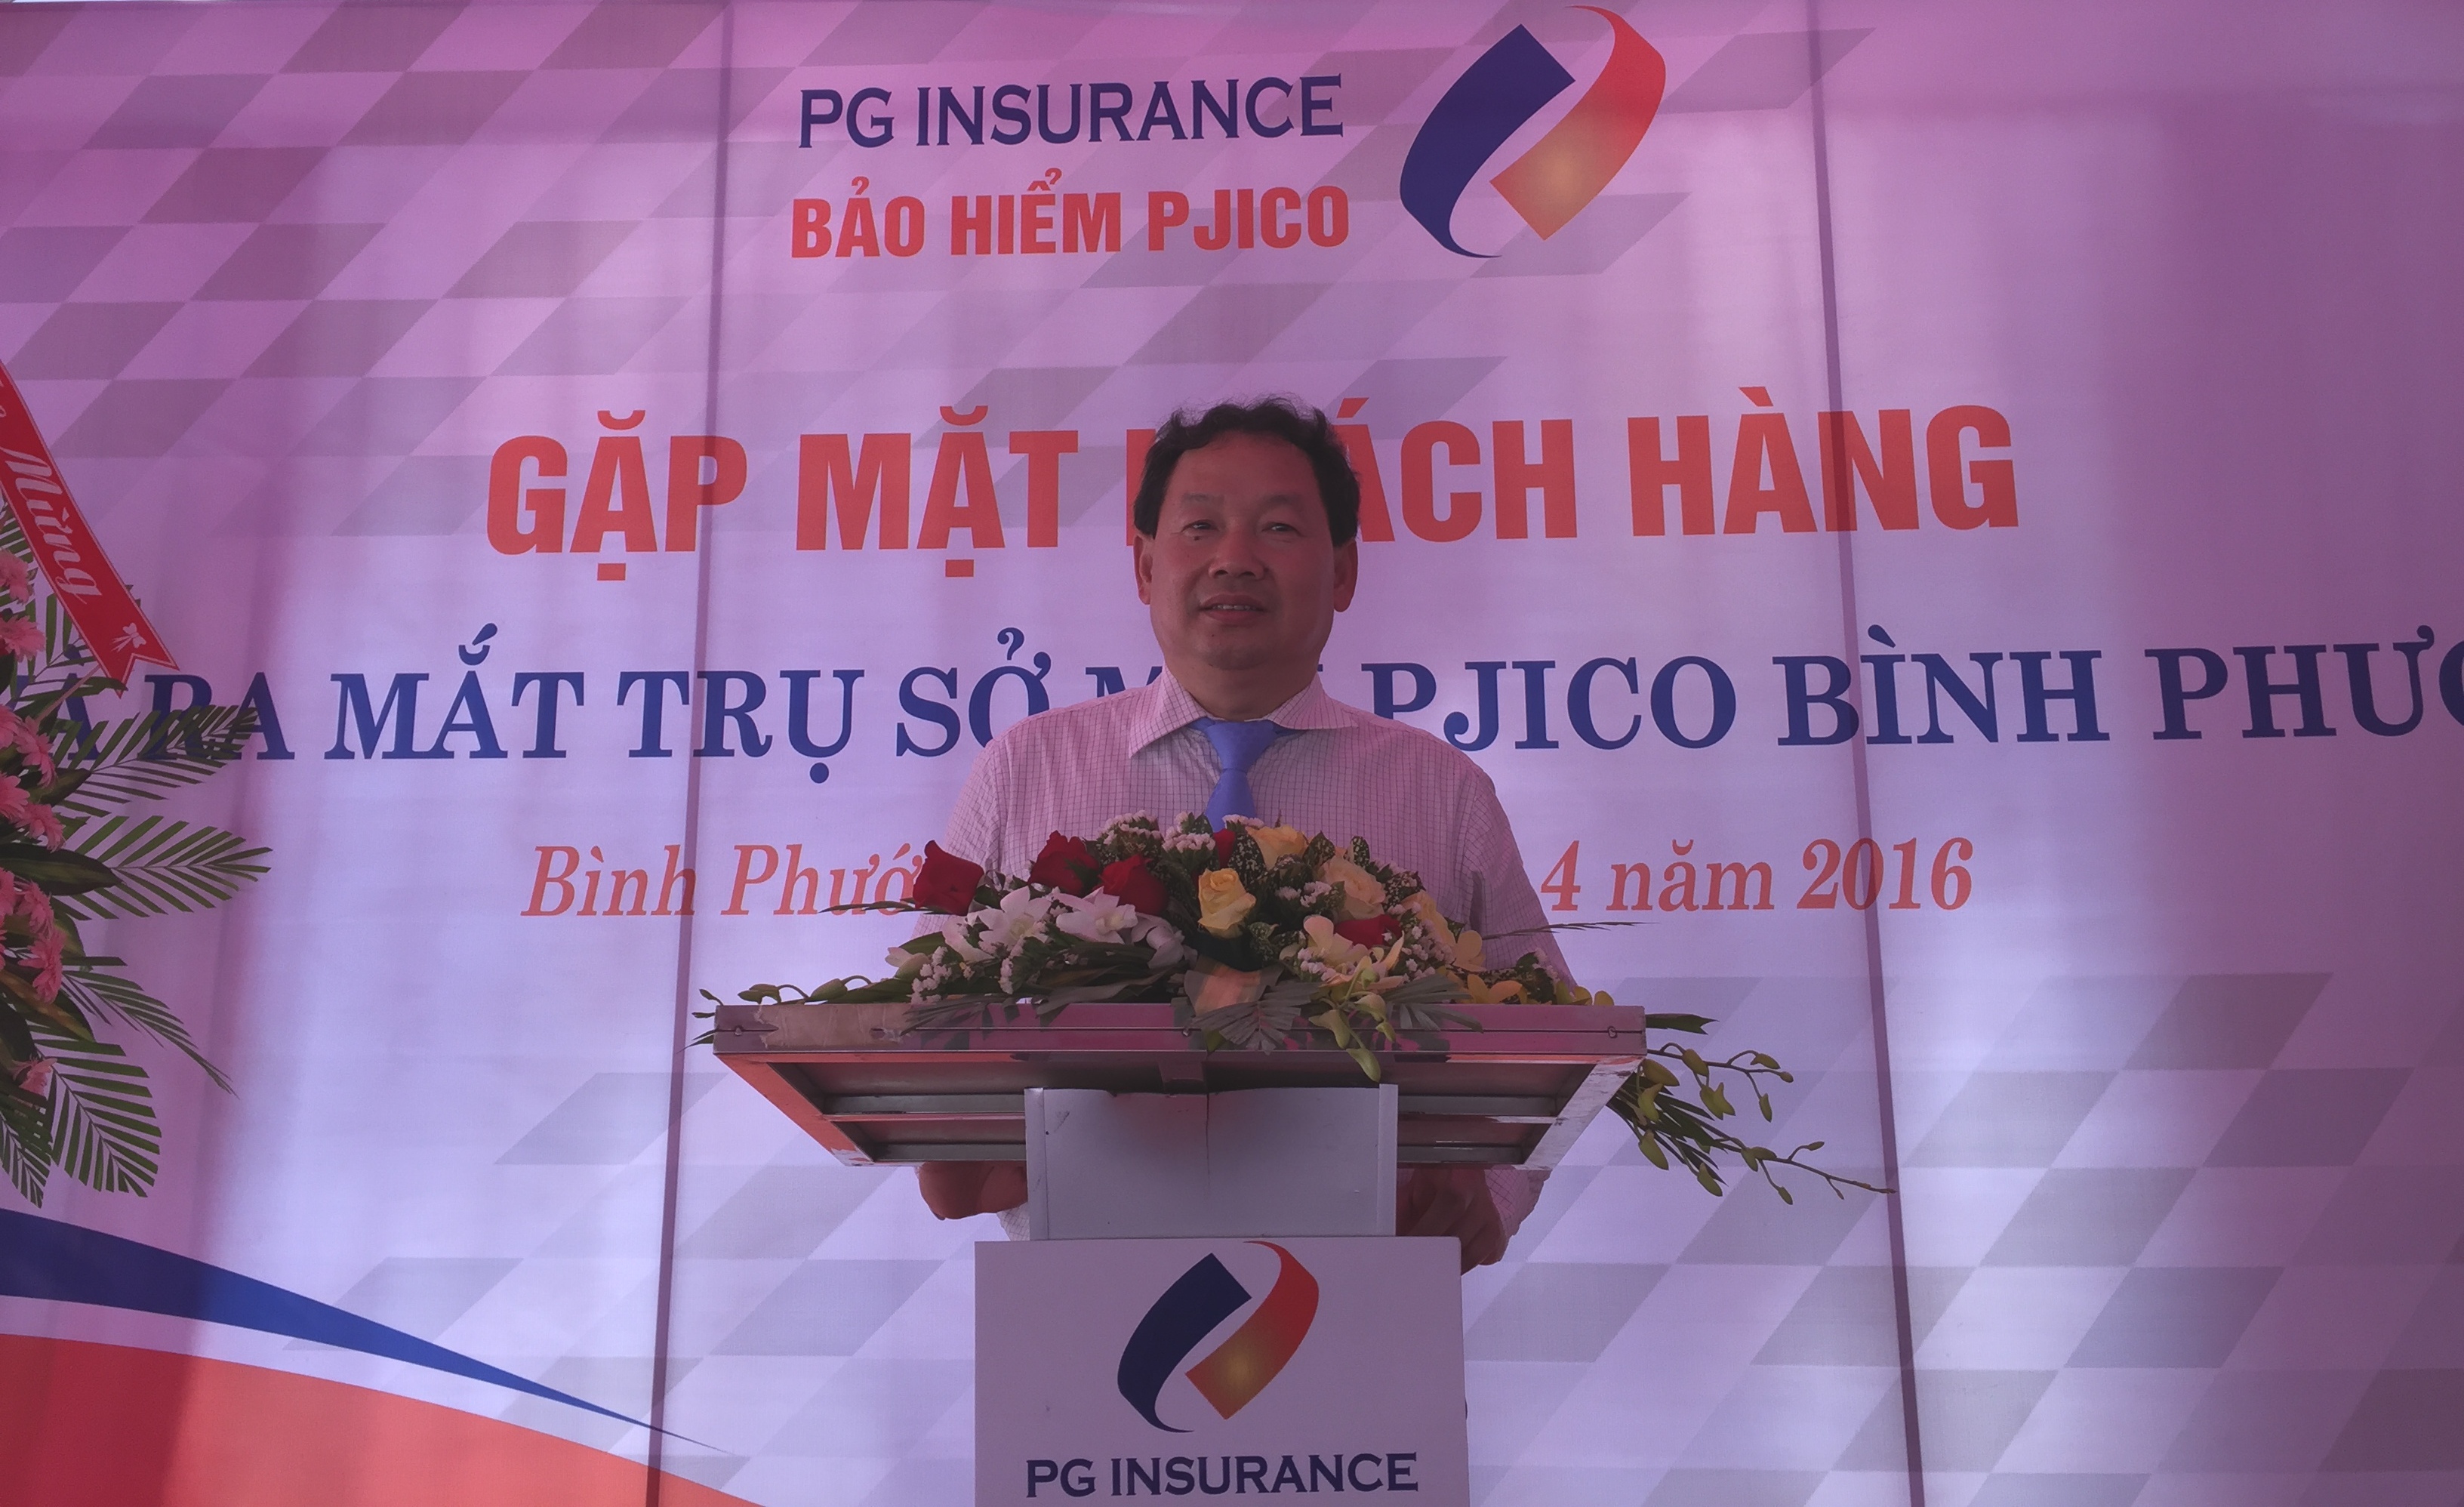 Công ty Bảo hiểm PJICO Bình Phước tổ chức Gặp mặt khách hàng thường niên và ra mắt trụ sở mới